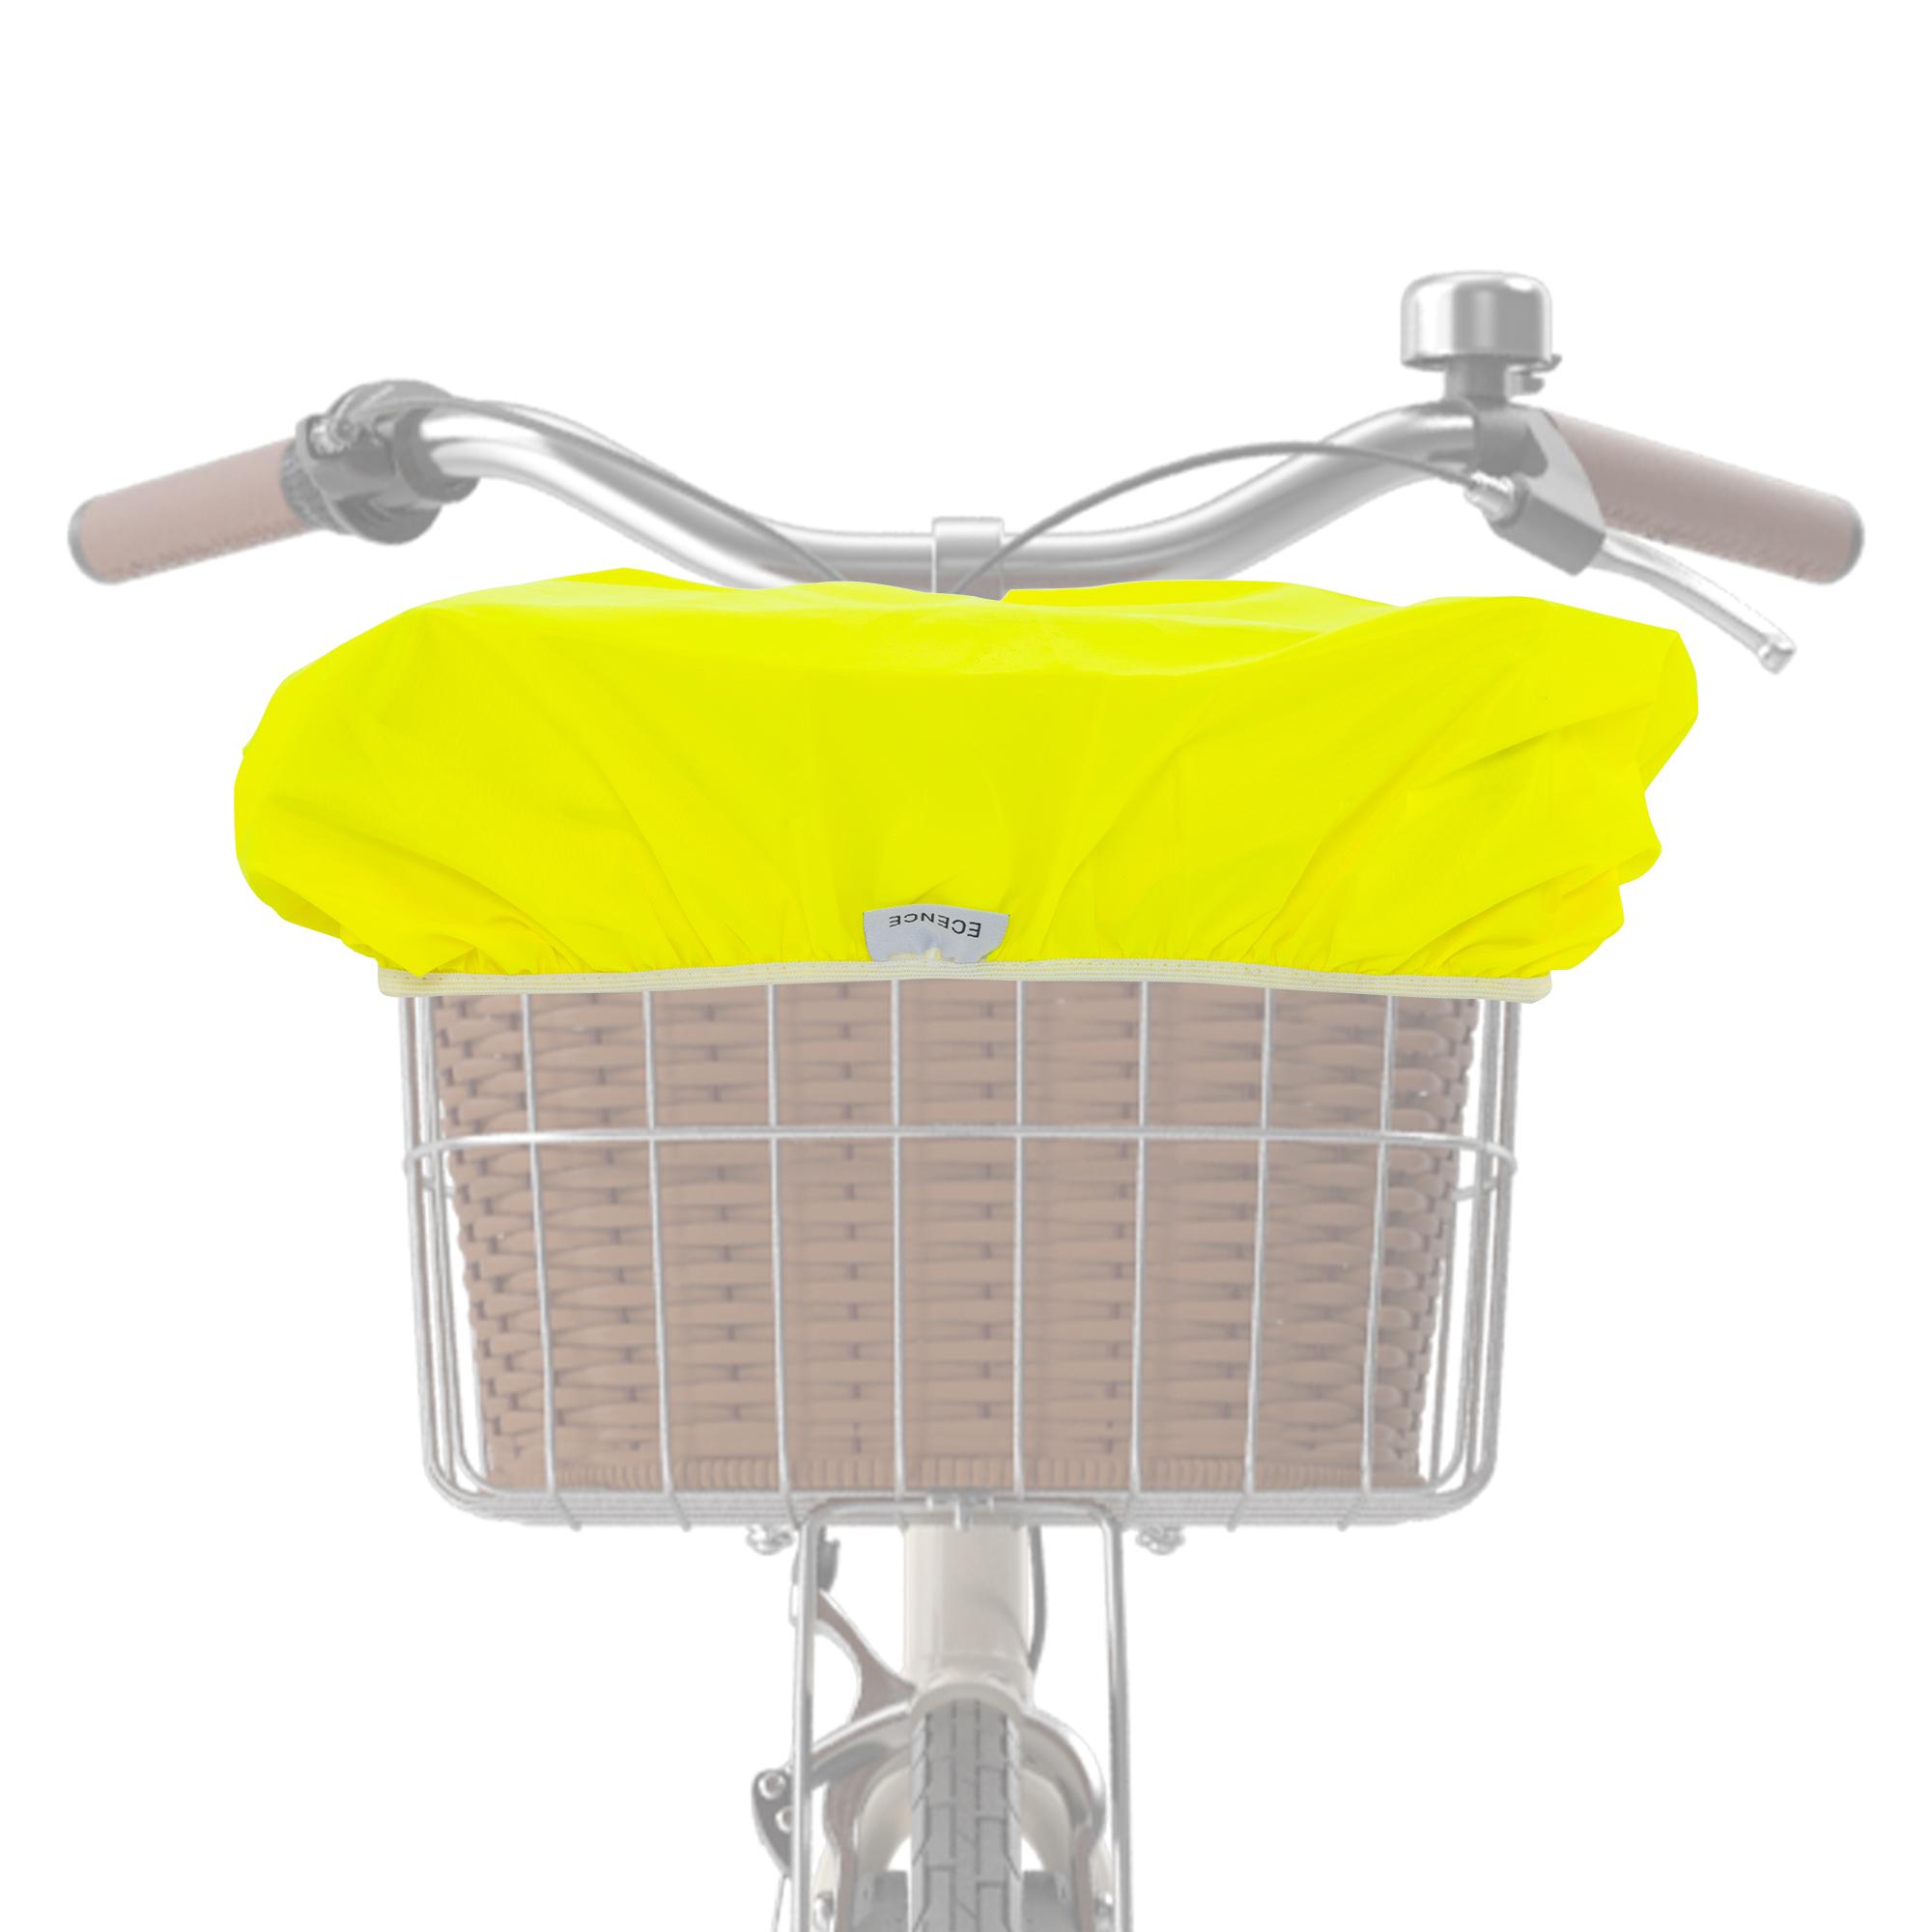 1x Fahrradkorb Regenschutz Gelb Korb-Abdeckung Überzug wasserabweisend